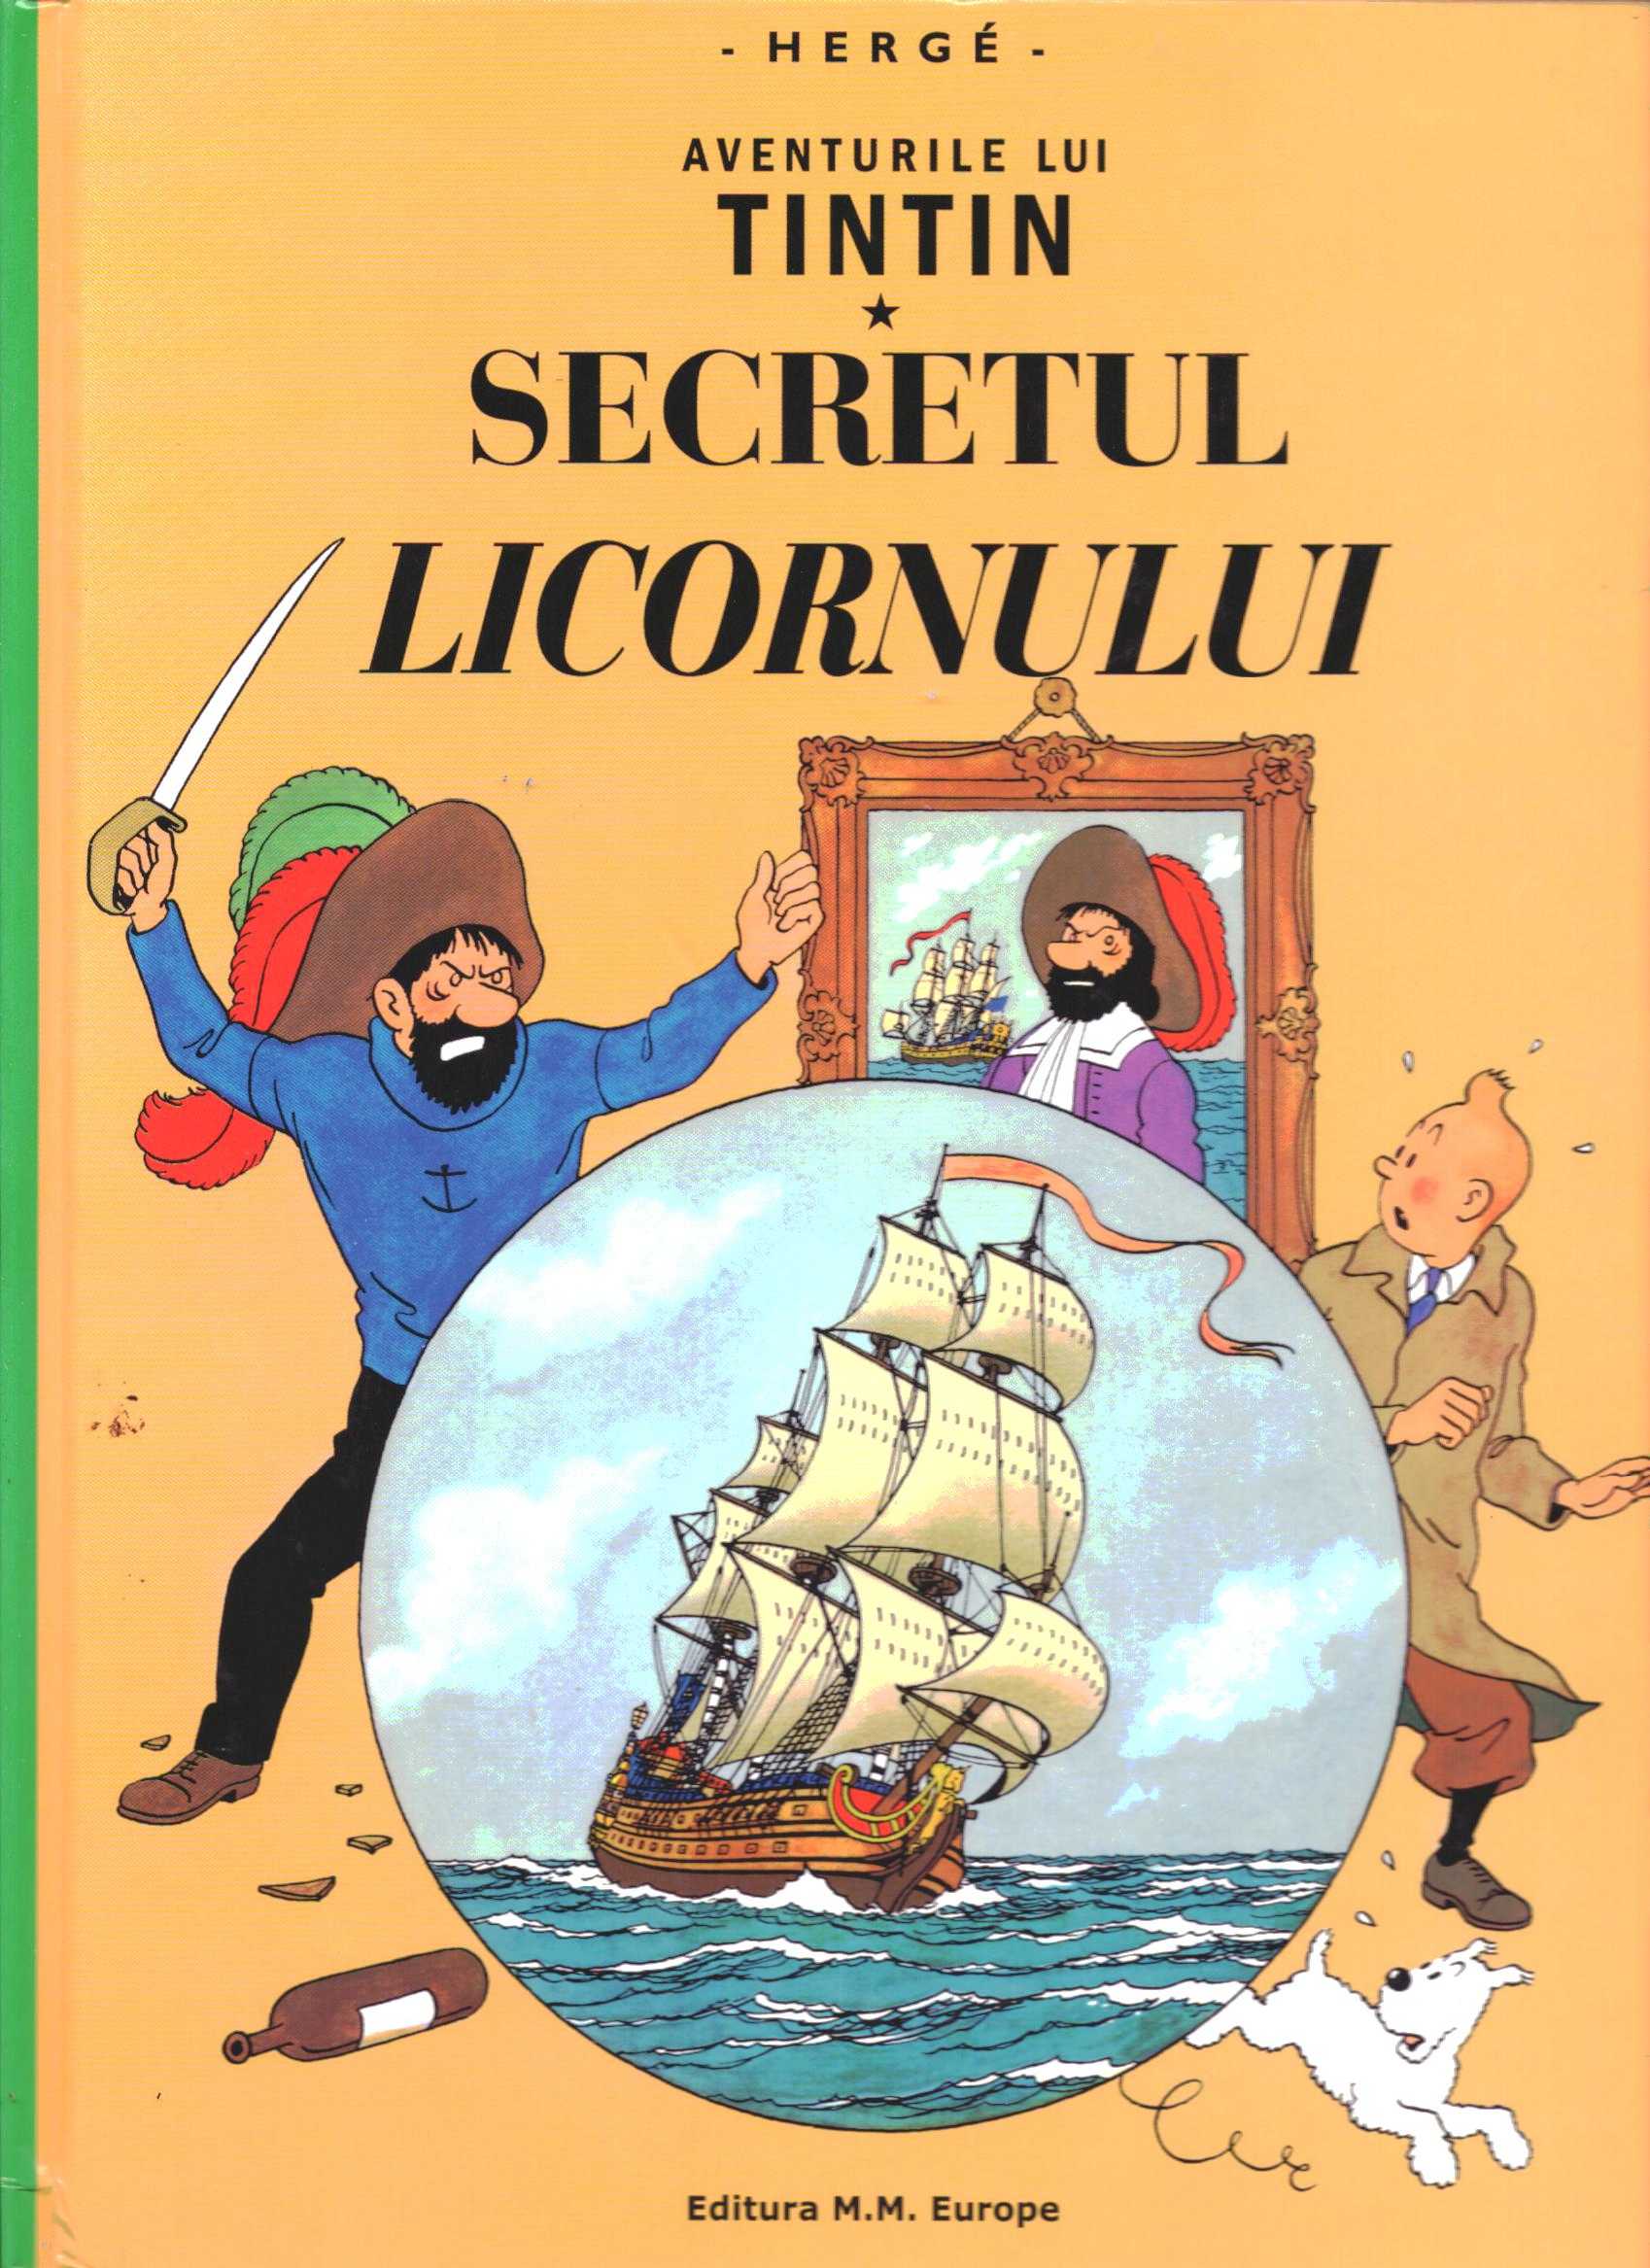 Aventurile Lui Tintin: Secretul Licornului